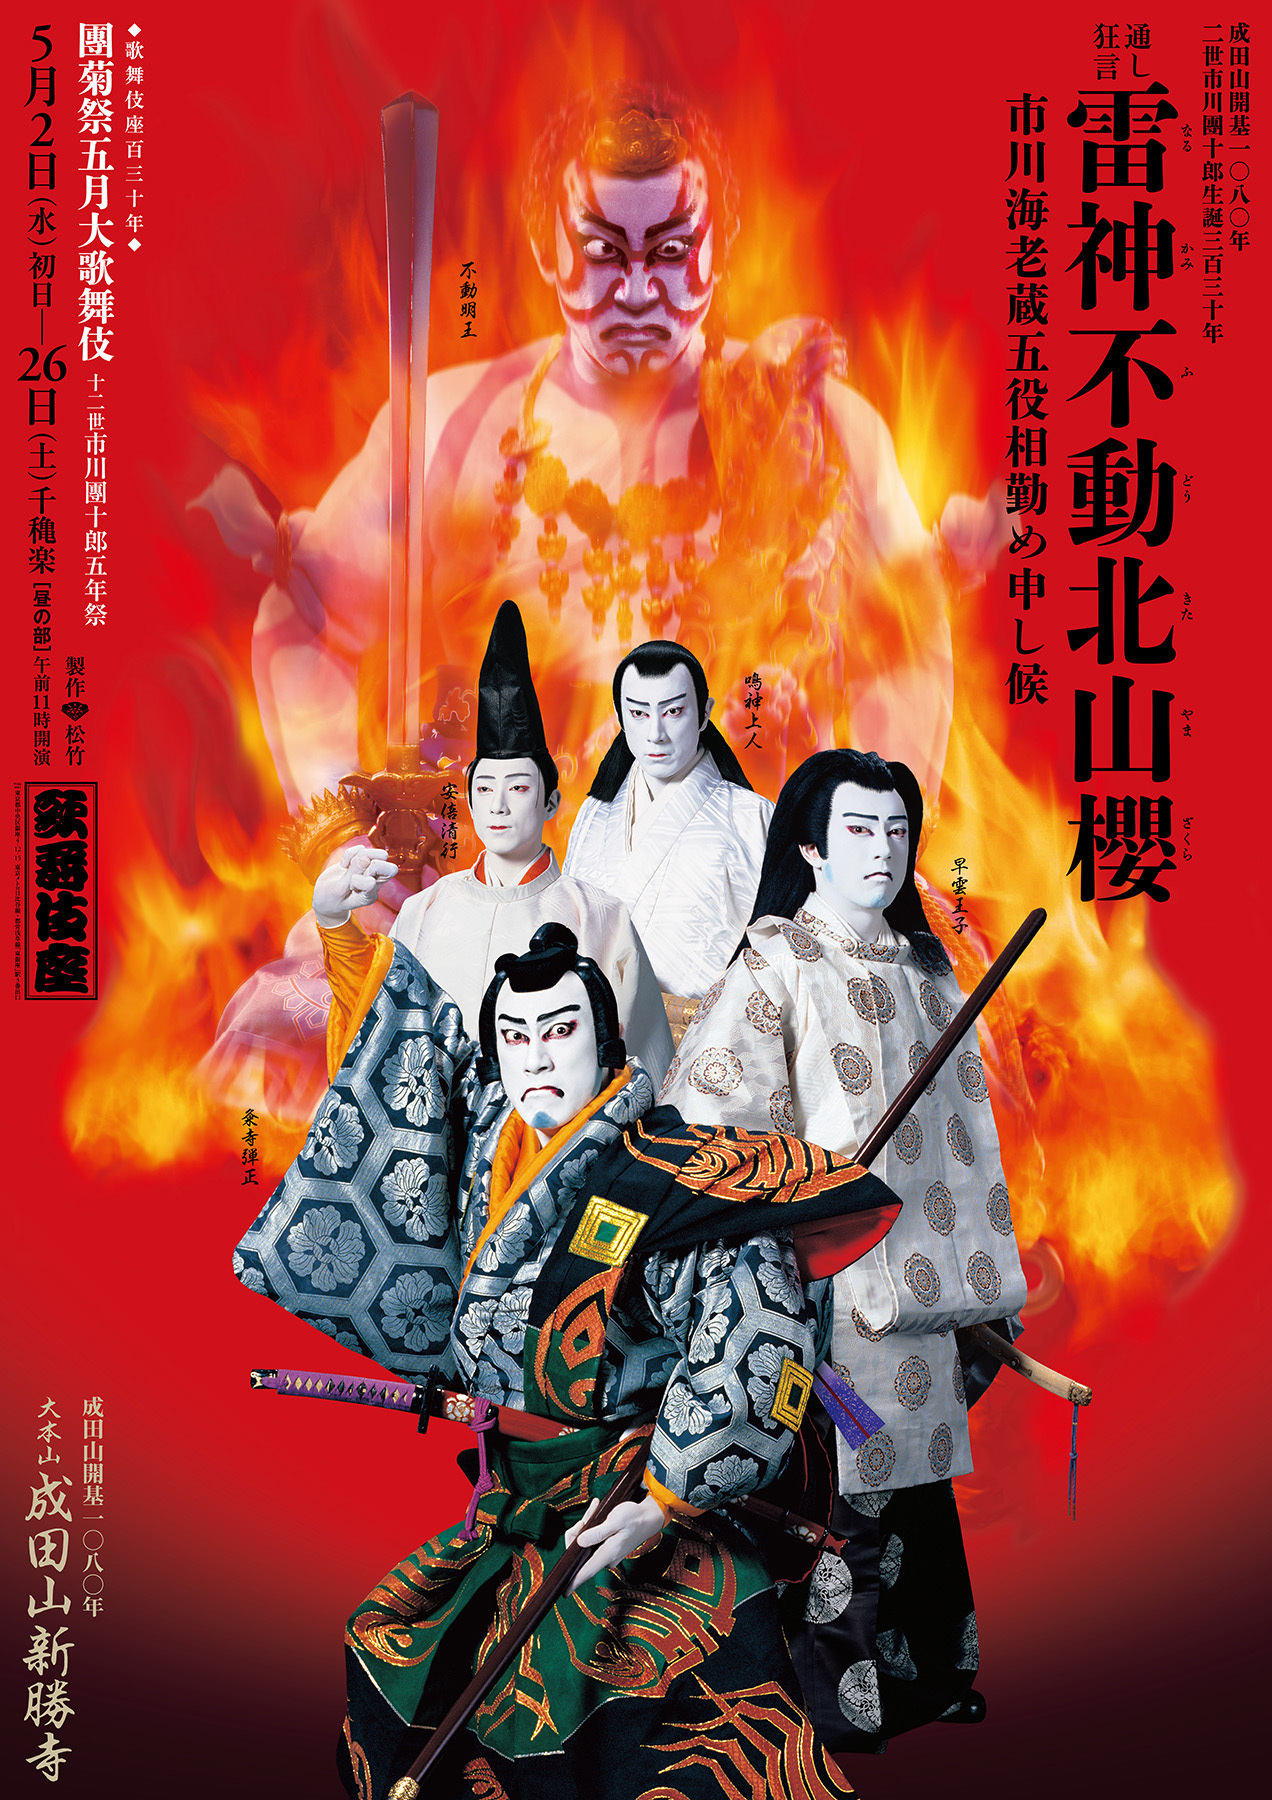 成田山開基1080年記念「雷神不動北山櫻」を、５月の歌舞伎座で上演！チケット好評発売中！